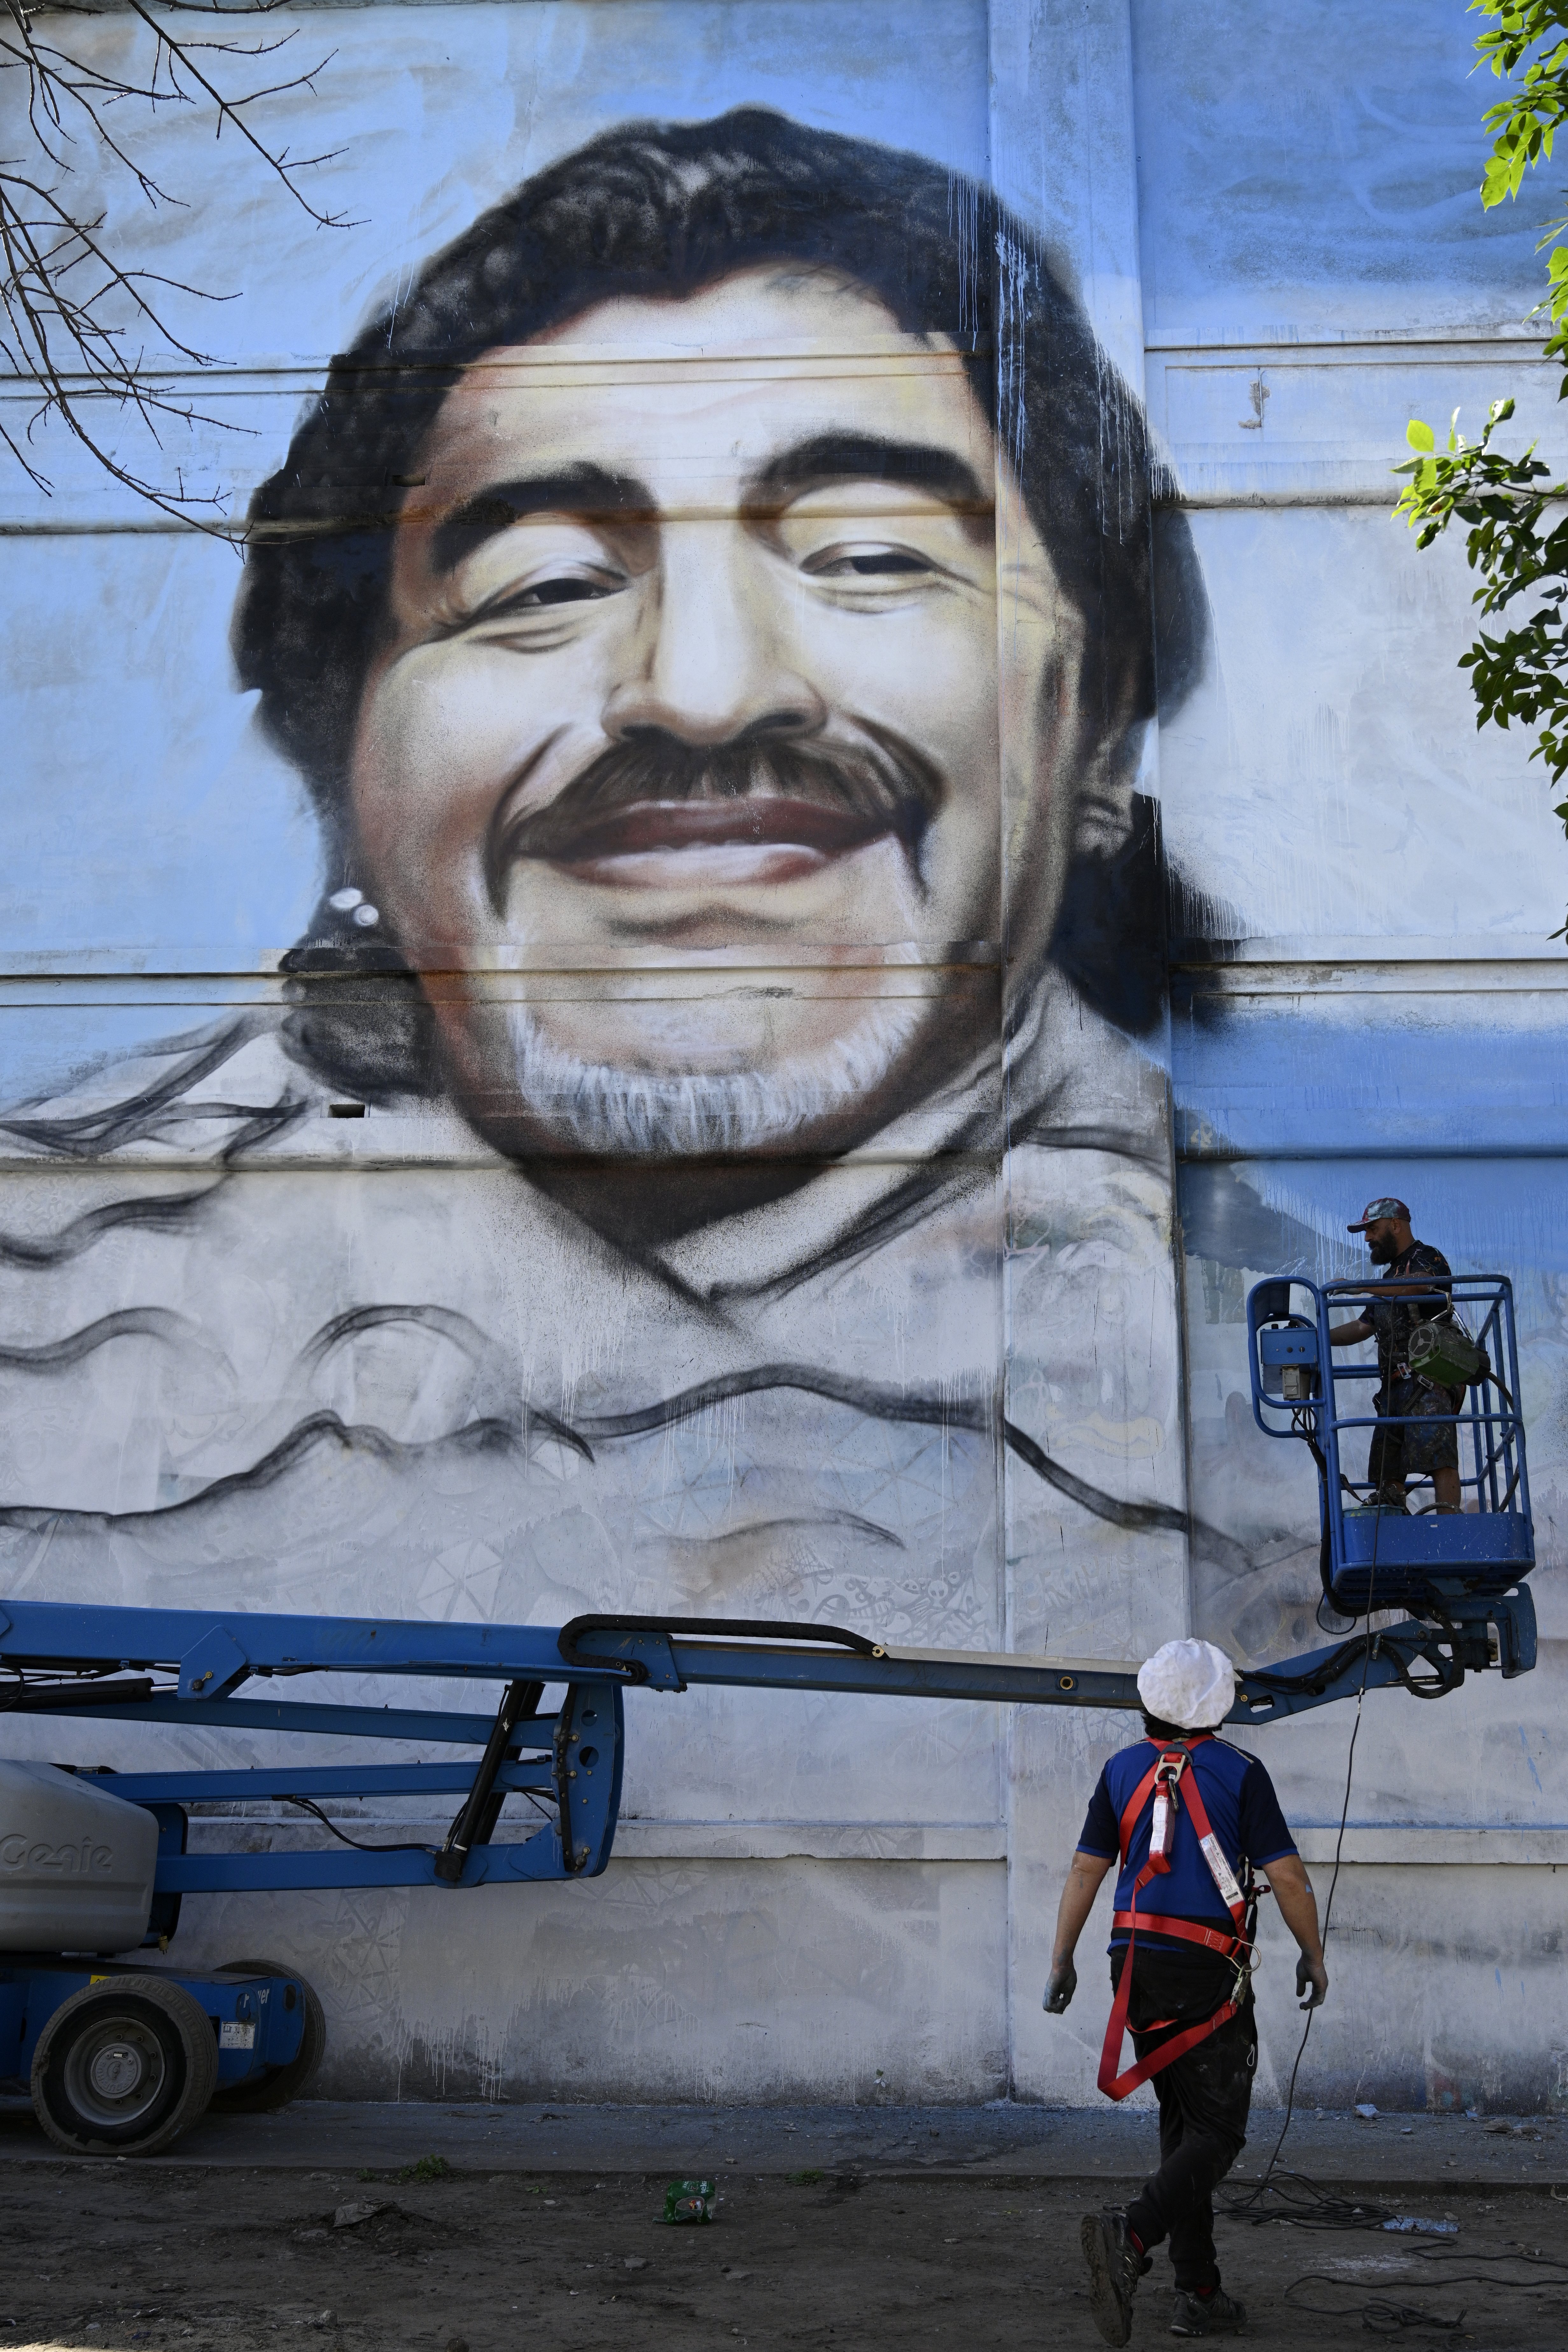 Legisladores proponen una calle Maradona y un circuito cultural en su memoria en Buenos Aires